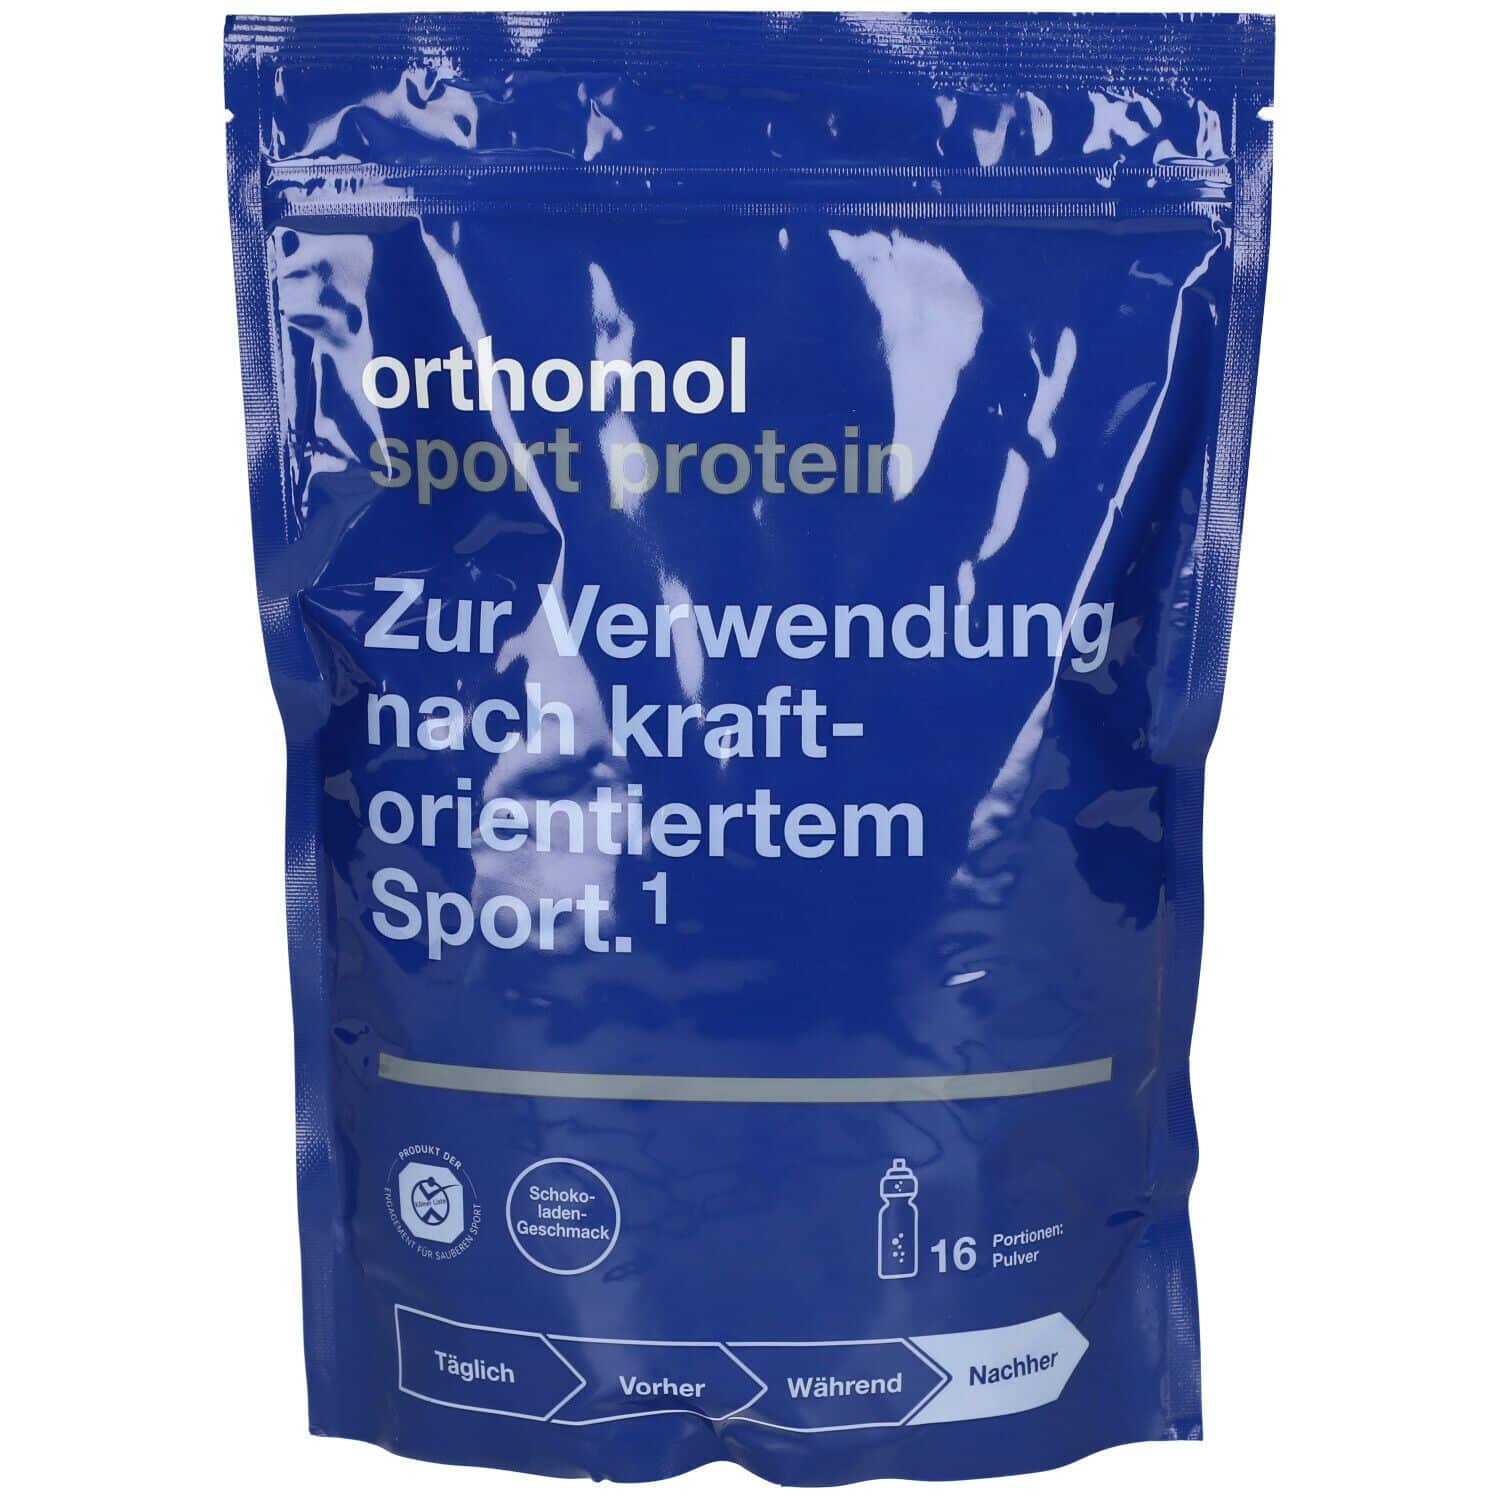 Orthomol Sport protein - Regeneration nach dem Kraftsport - Eiweißpulver mit Kreatin und Bcaa - Schokoladen-Geschmack - Pulver